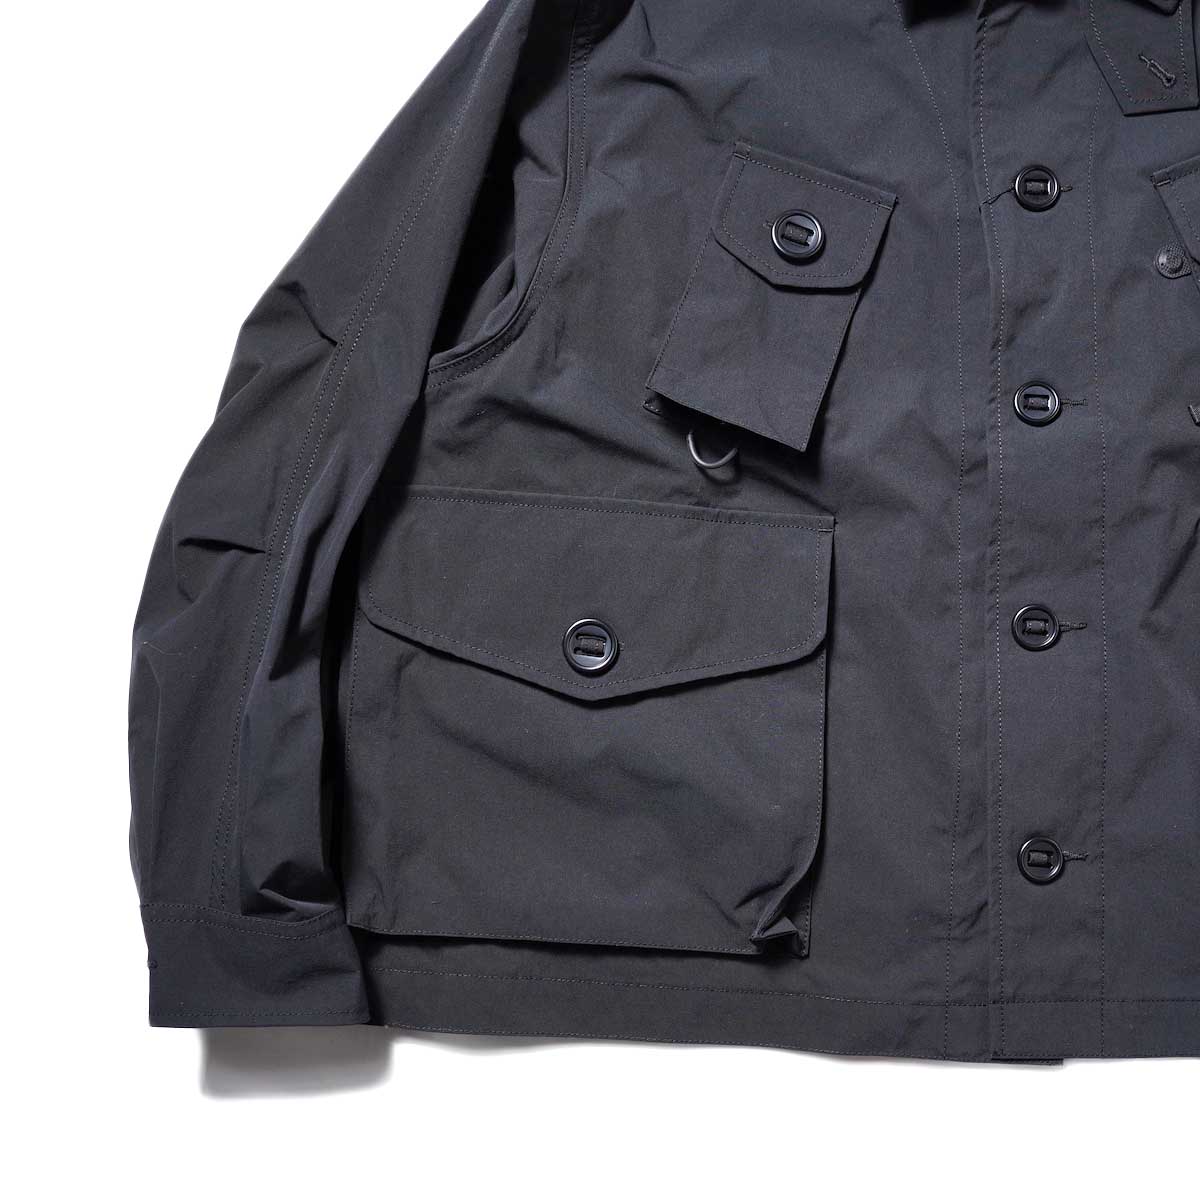 DAIWA PIER39 / Tech Canadian Fatigue Jacket (Black)ポケット